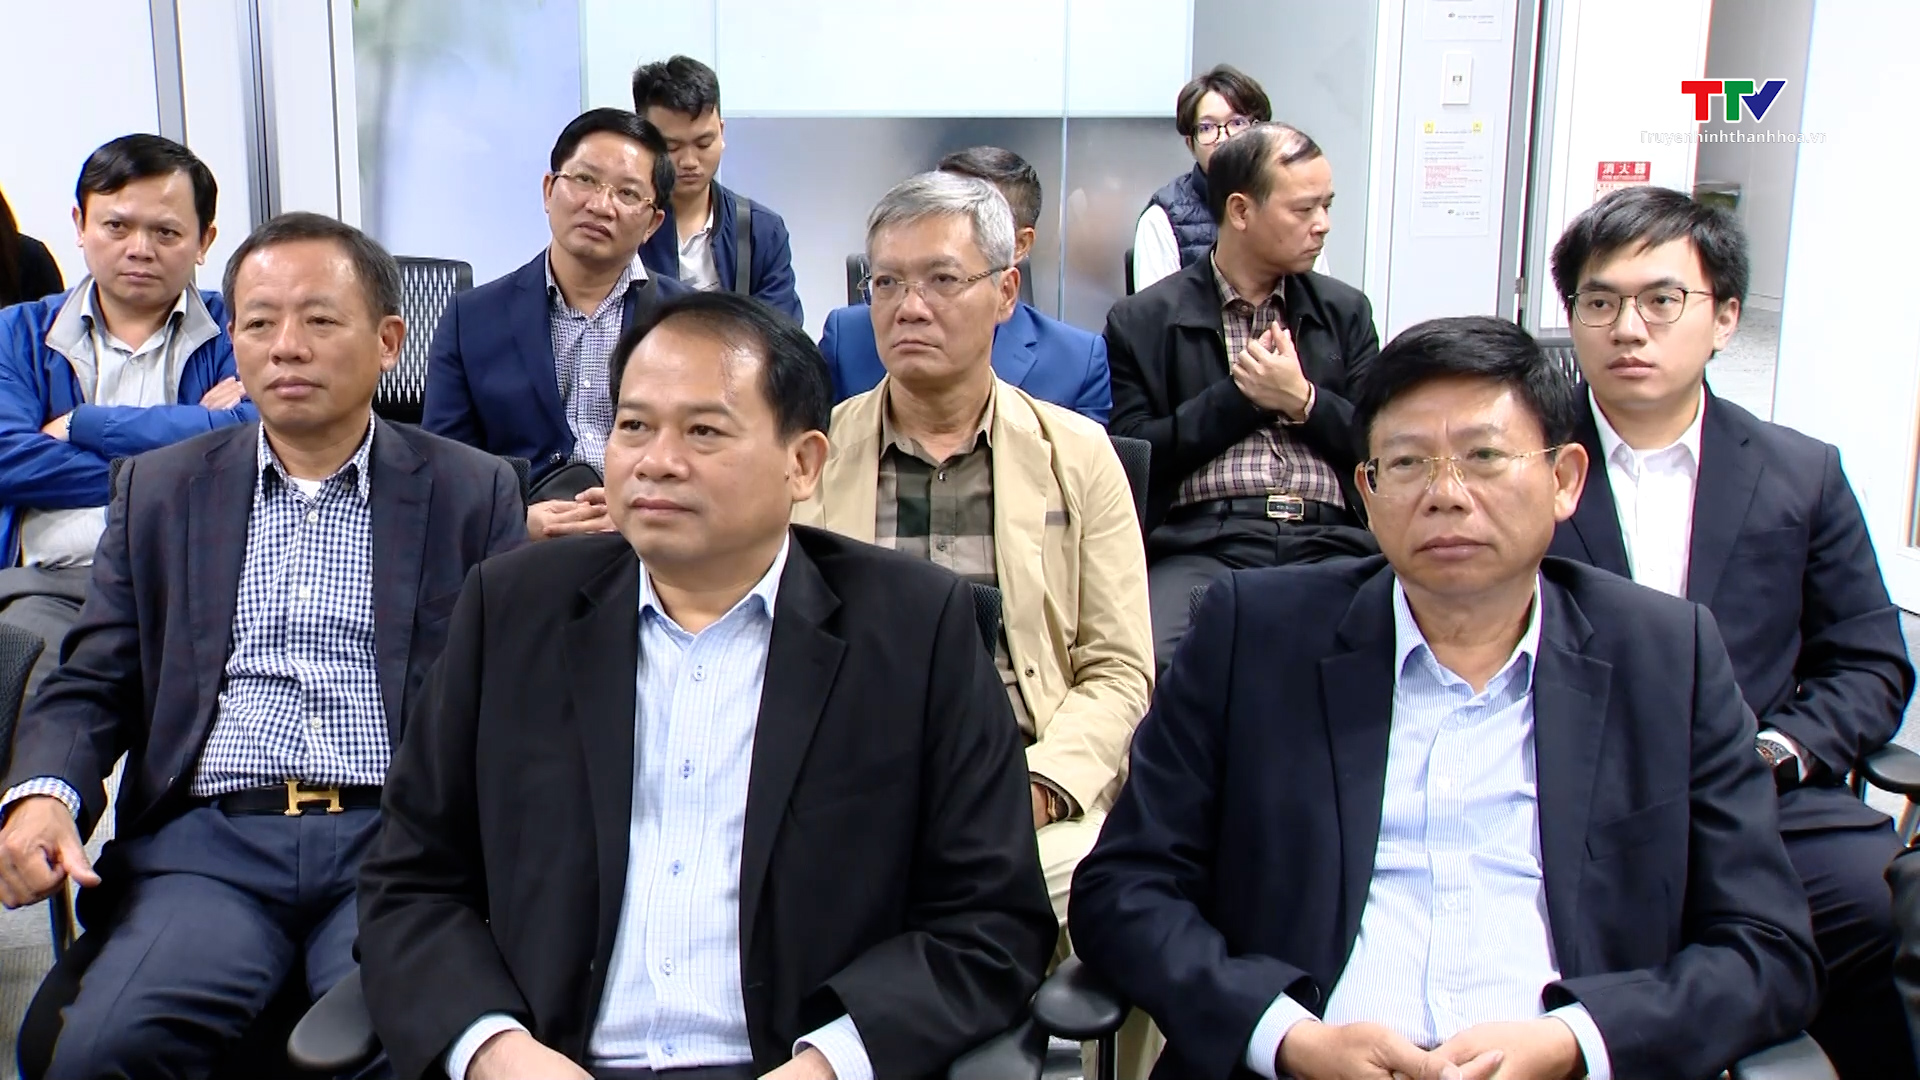 Đoàn đại biểu cấp cao tỉnh Thanh Hóa gặp mặt cộng đồng người Thanh Hóa tại Nhật Bản- Ảnh 3.